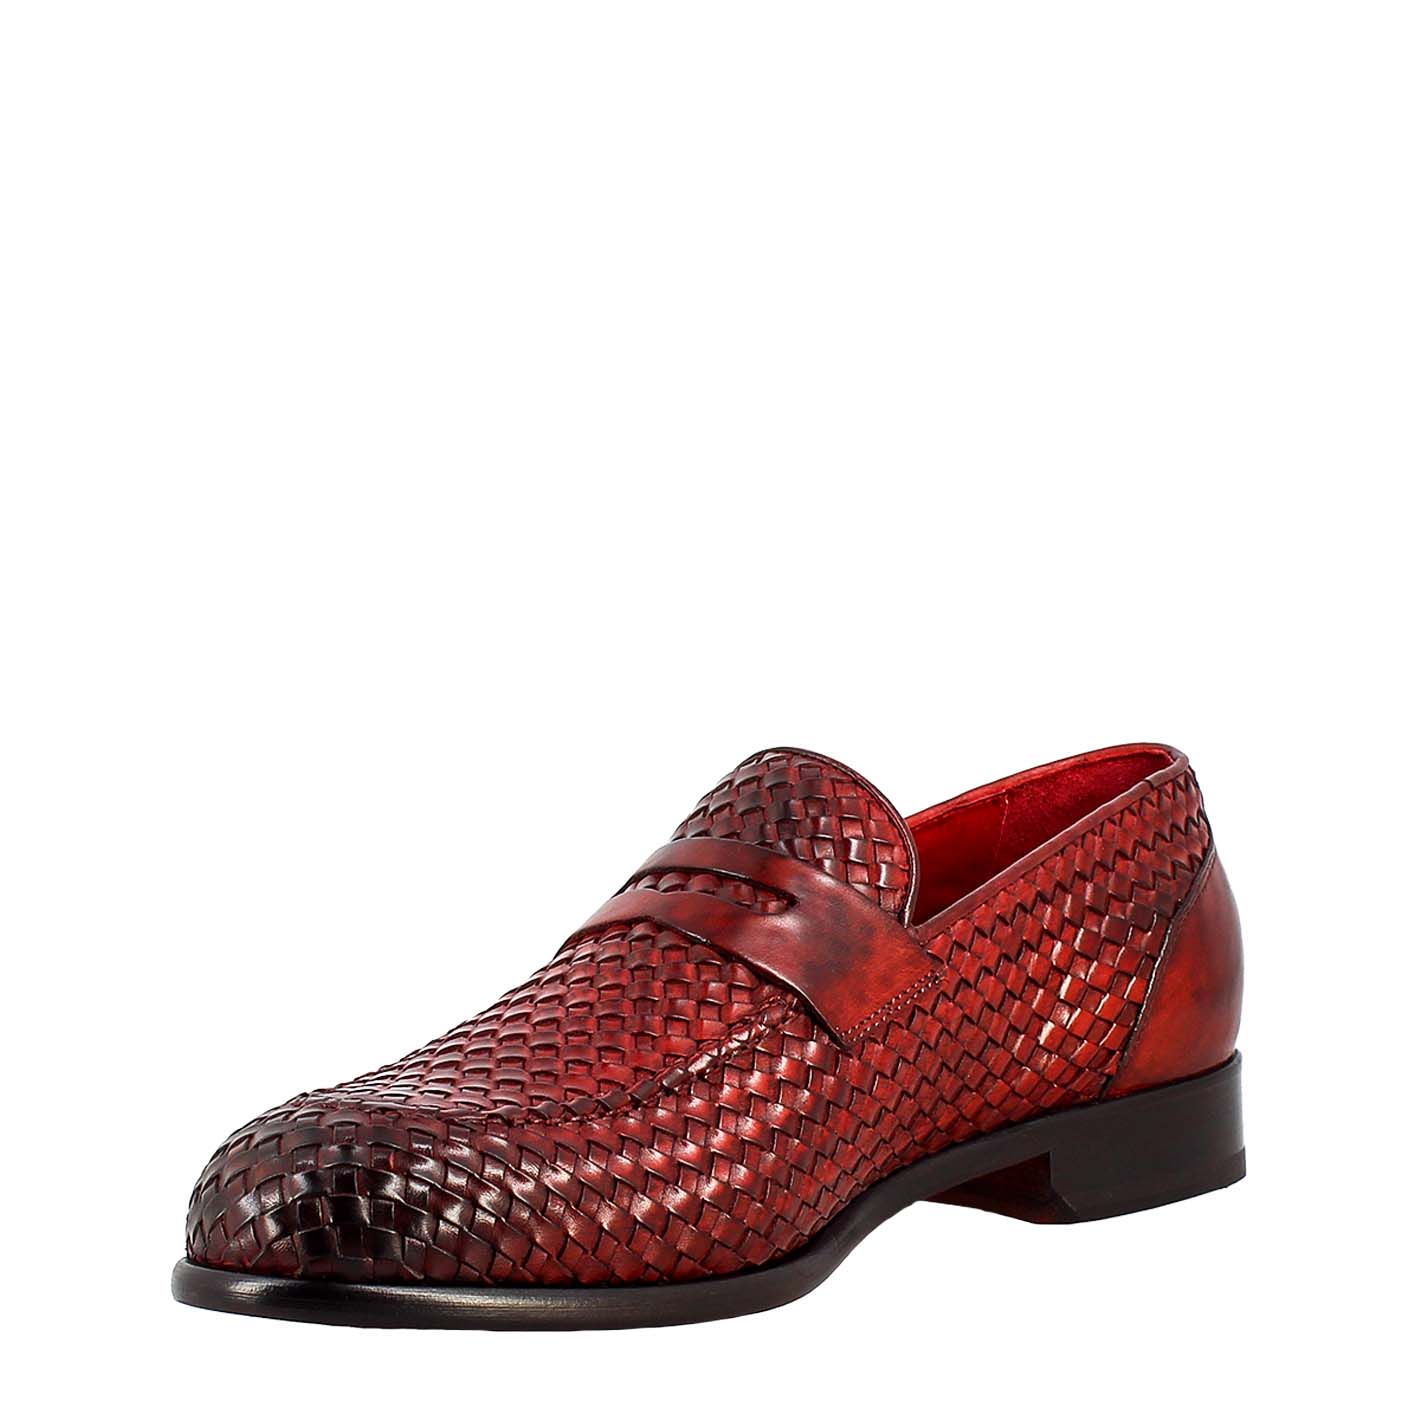 Elegant red moccasin for men in woven full grain leather